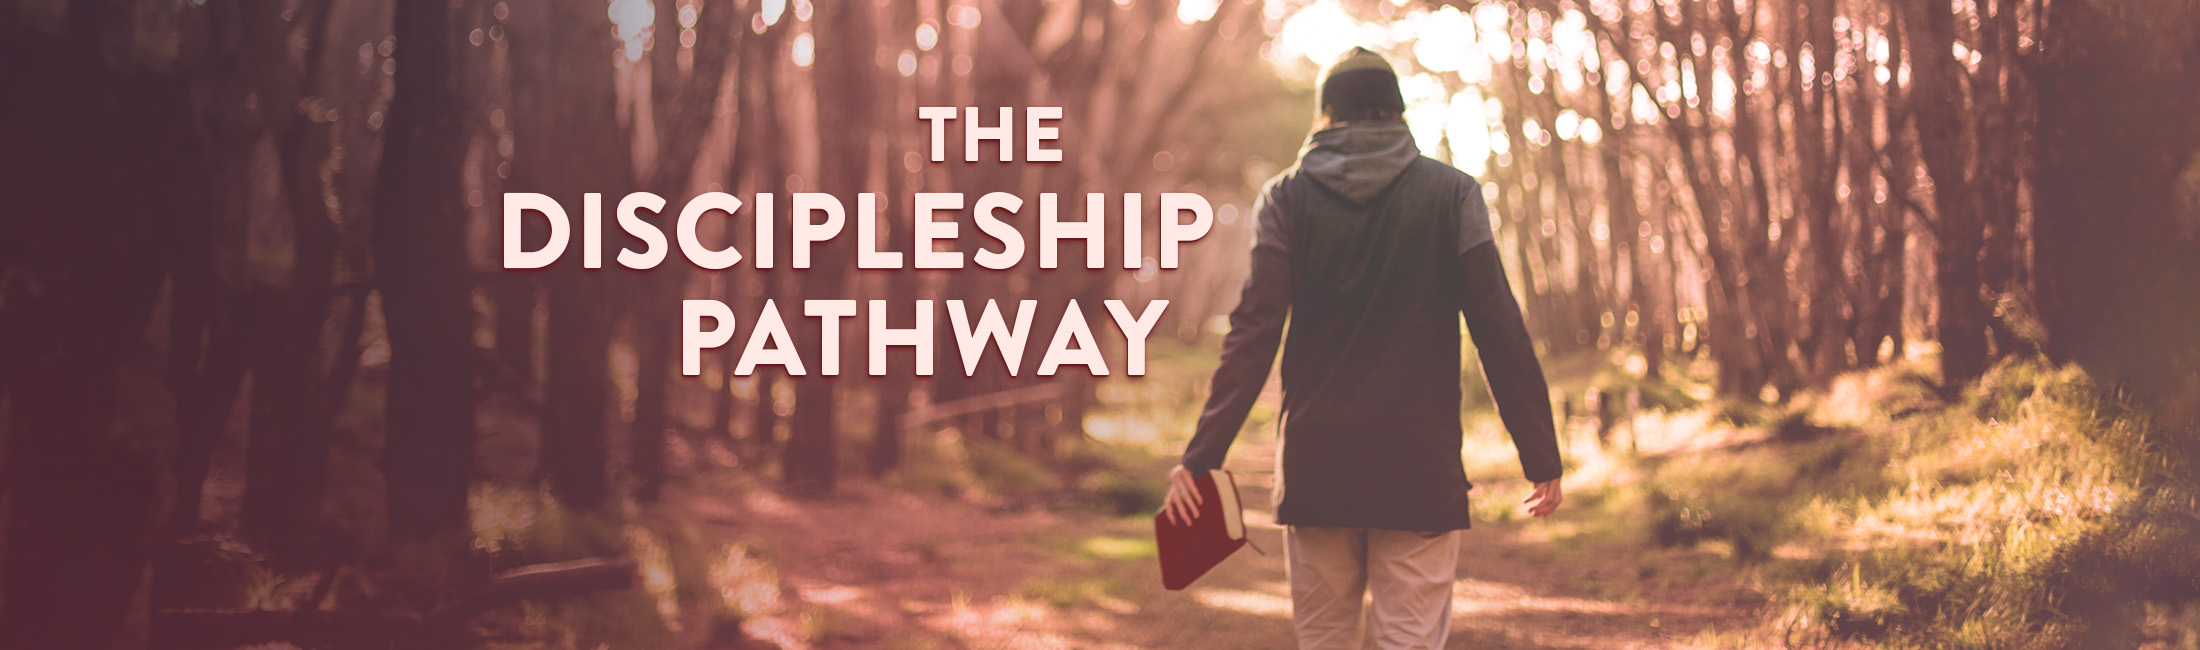 Discipleship Pathway_Website Header